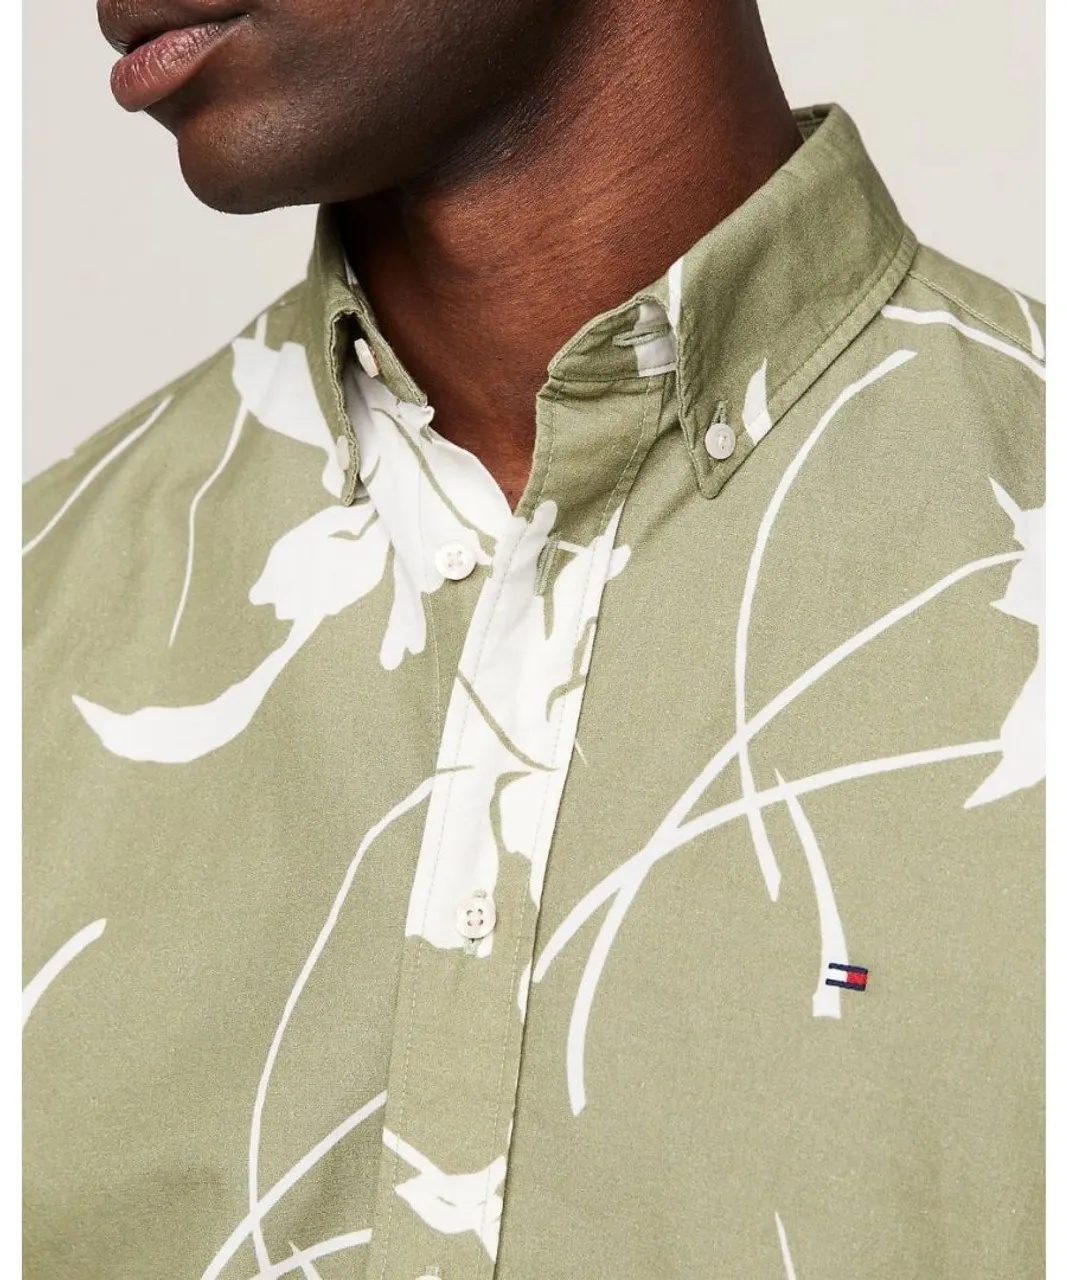 Tommy Hilfiger Large Tropical Print Mens Shirt - Olive